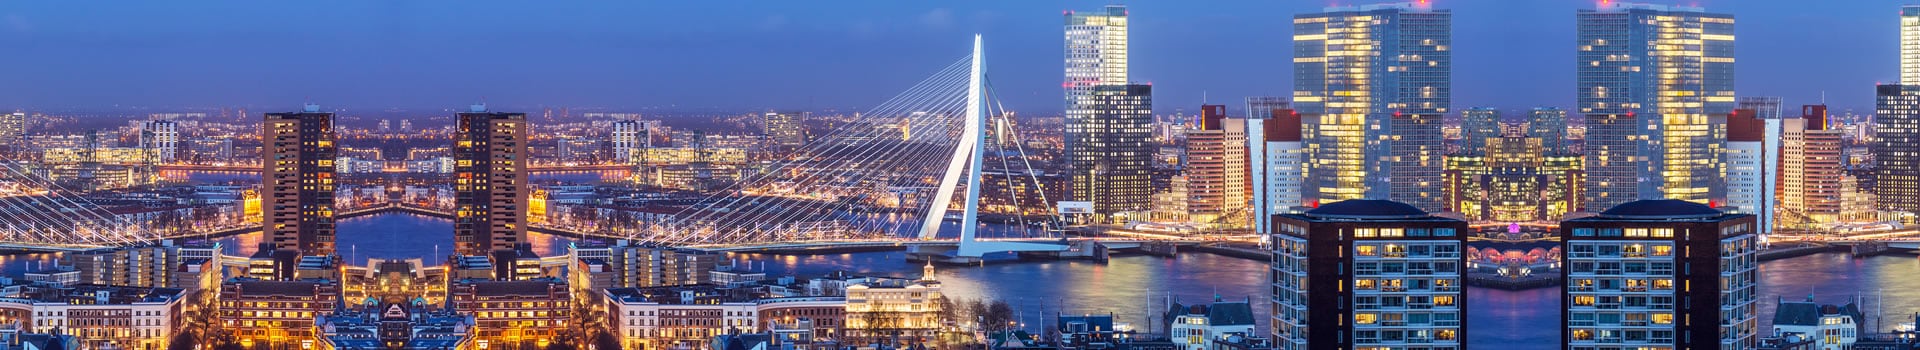 Porto - Rotterdam